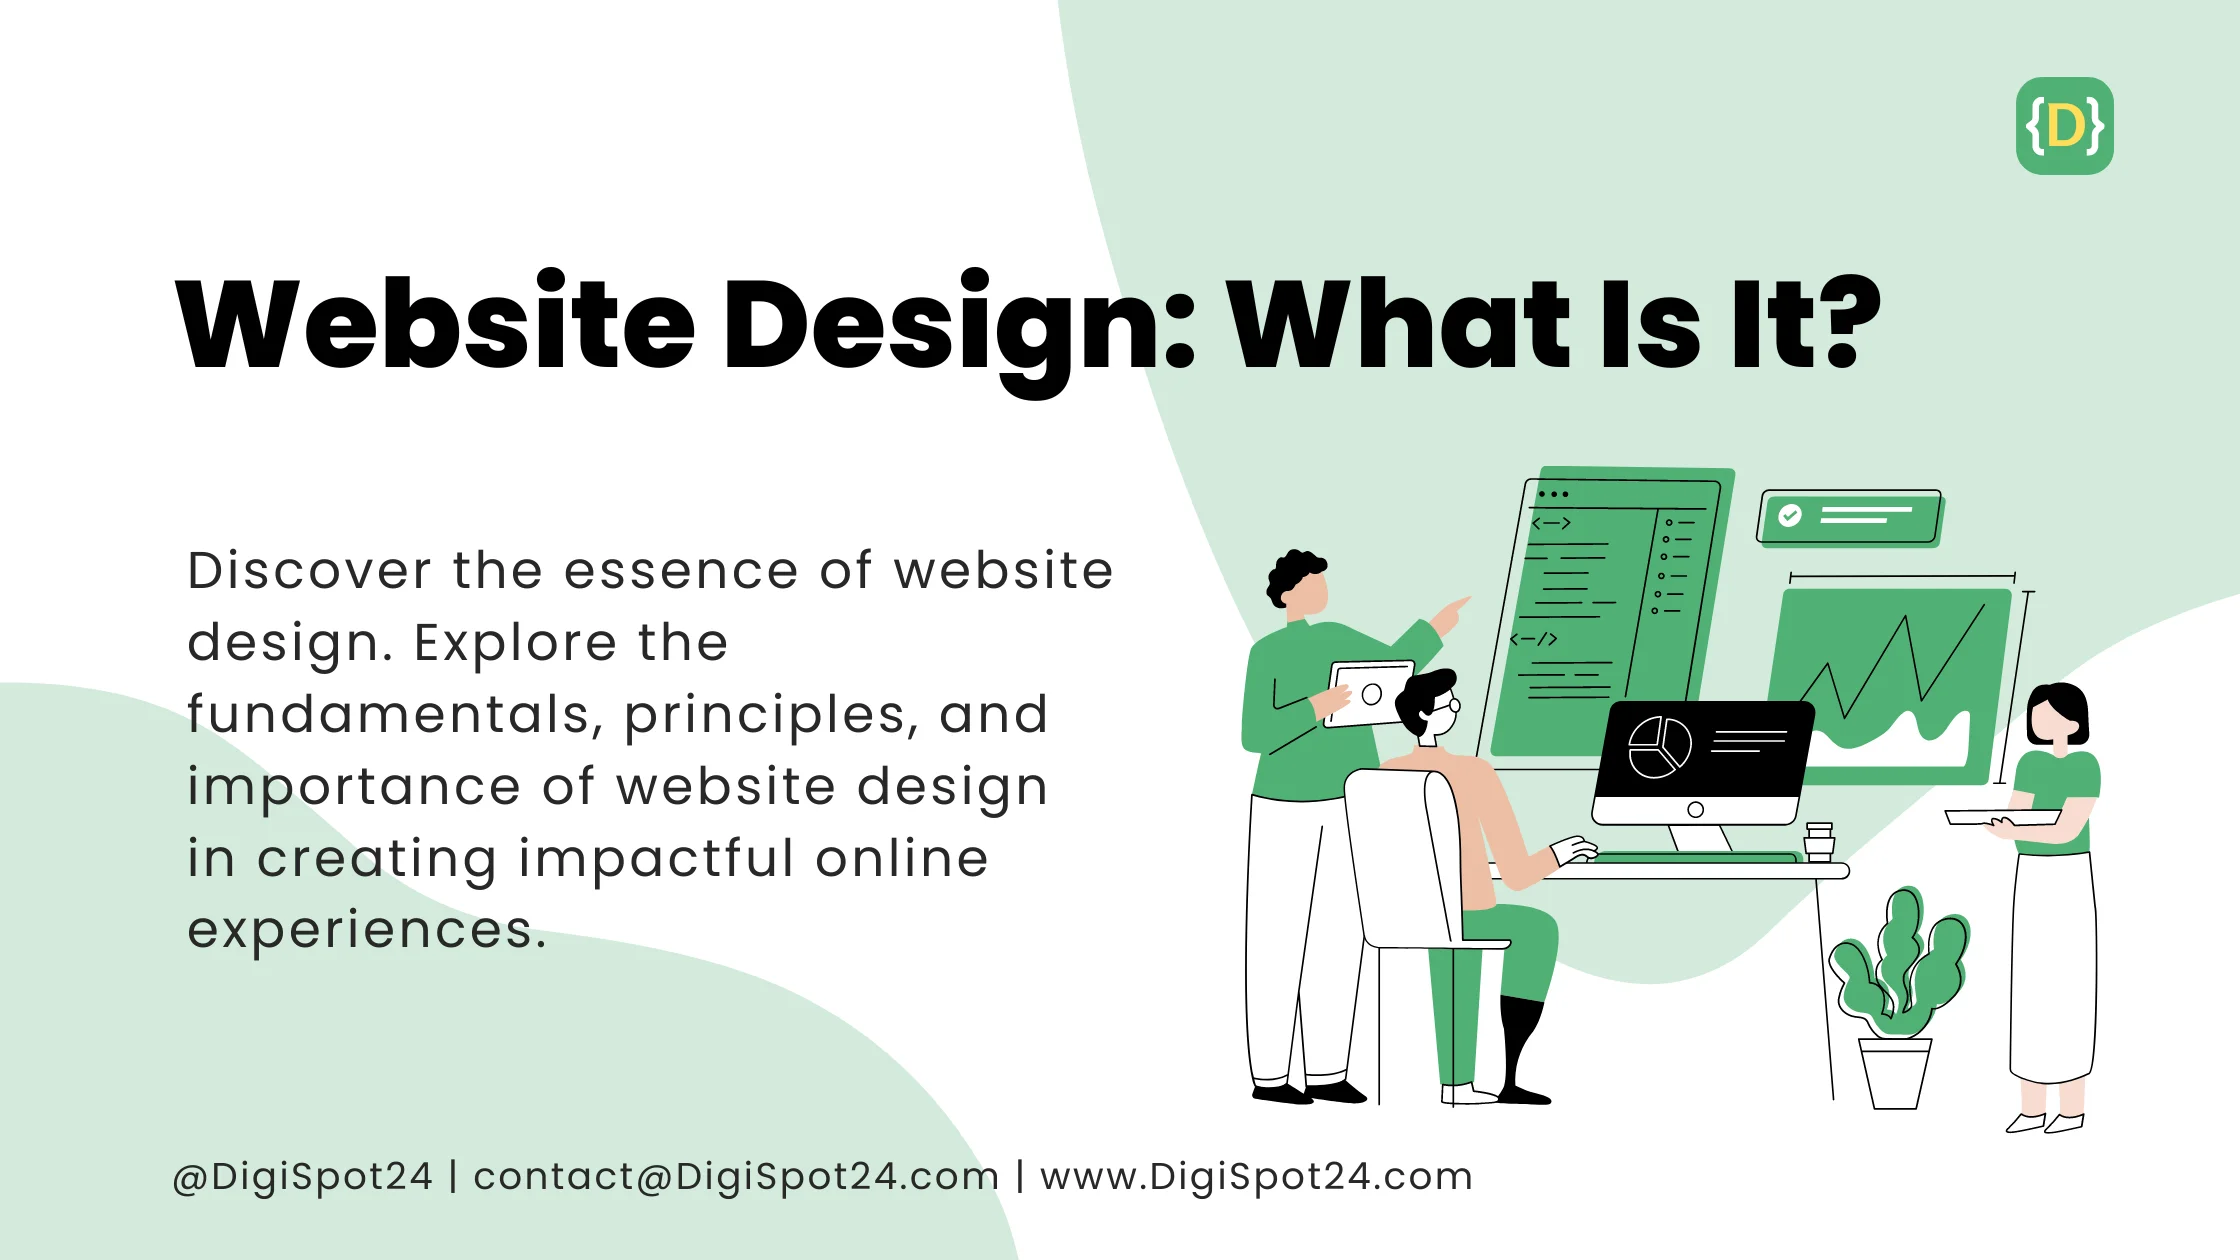 Website Design: What Is It? - Illustration depicting website design elements